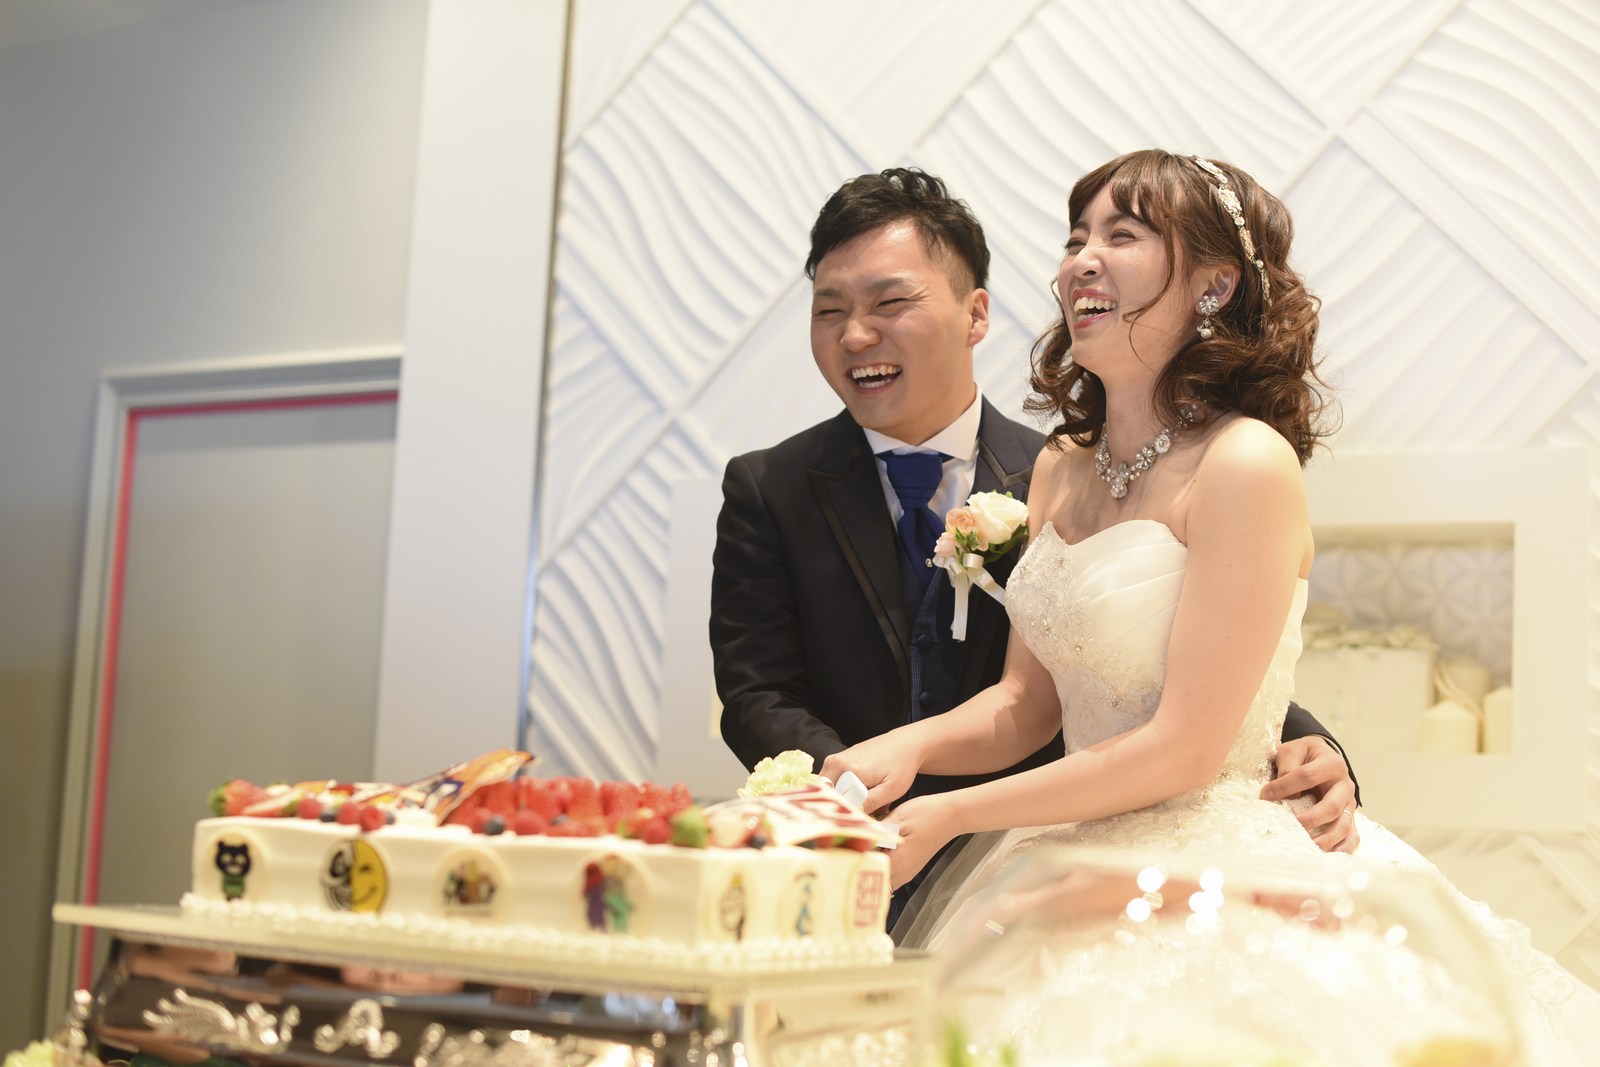 徳島市の結婚式場ブランアンジュでお幸せそうな笑顔でウエディングケーキ入刀している新郎新婦様